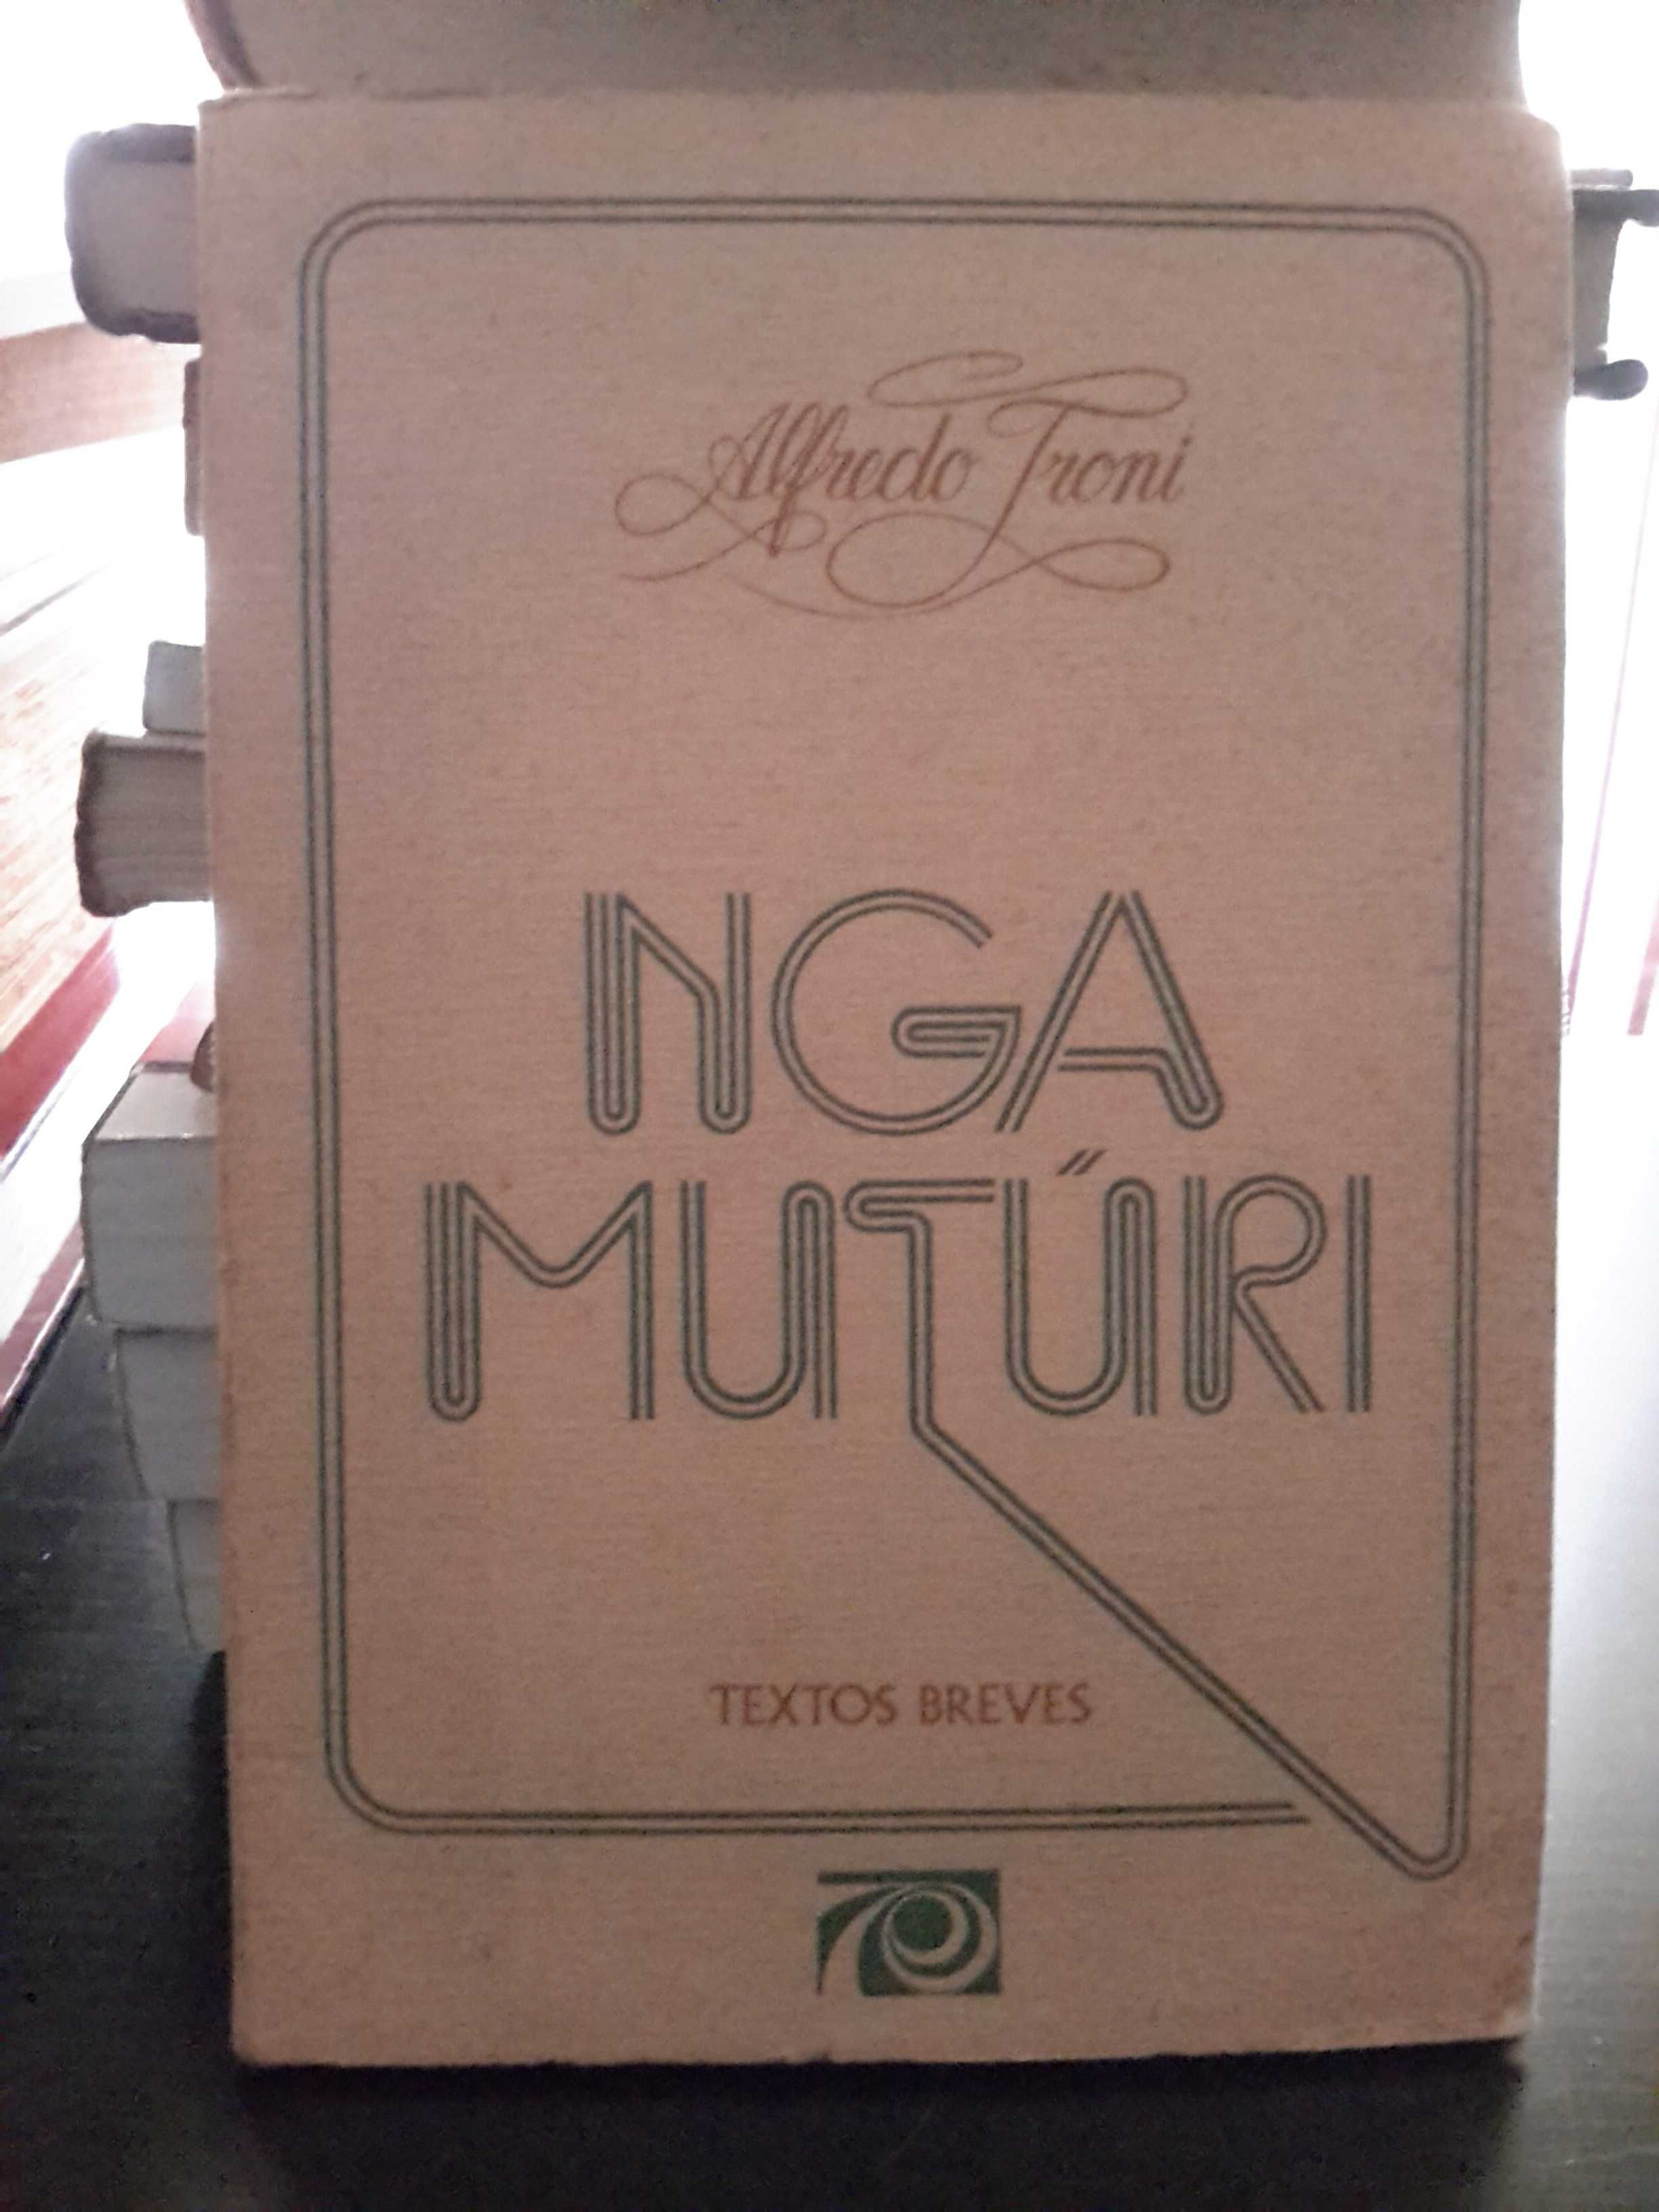 Alfredo Troni - Nga Mutúri (1.ª edição, 1973)